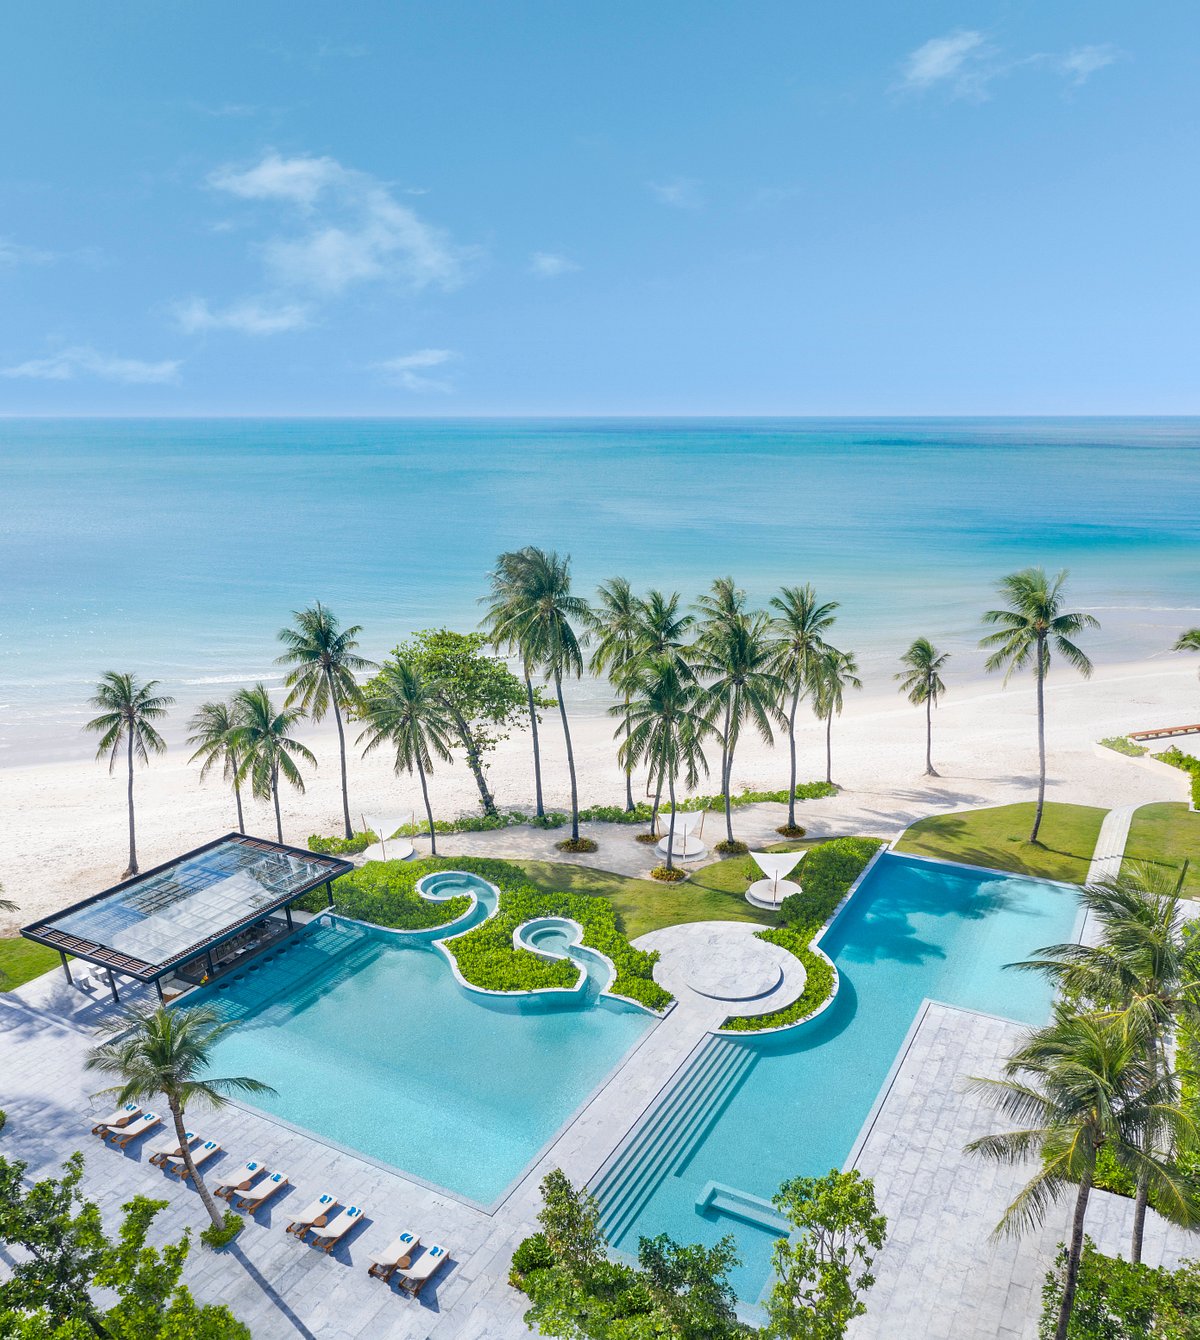 10 โรงแรมที่ดีที่สุดใน เกาะสมุย ประจำปี 2023 - Tripadvisor